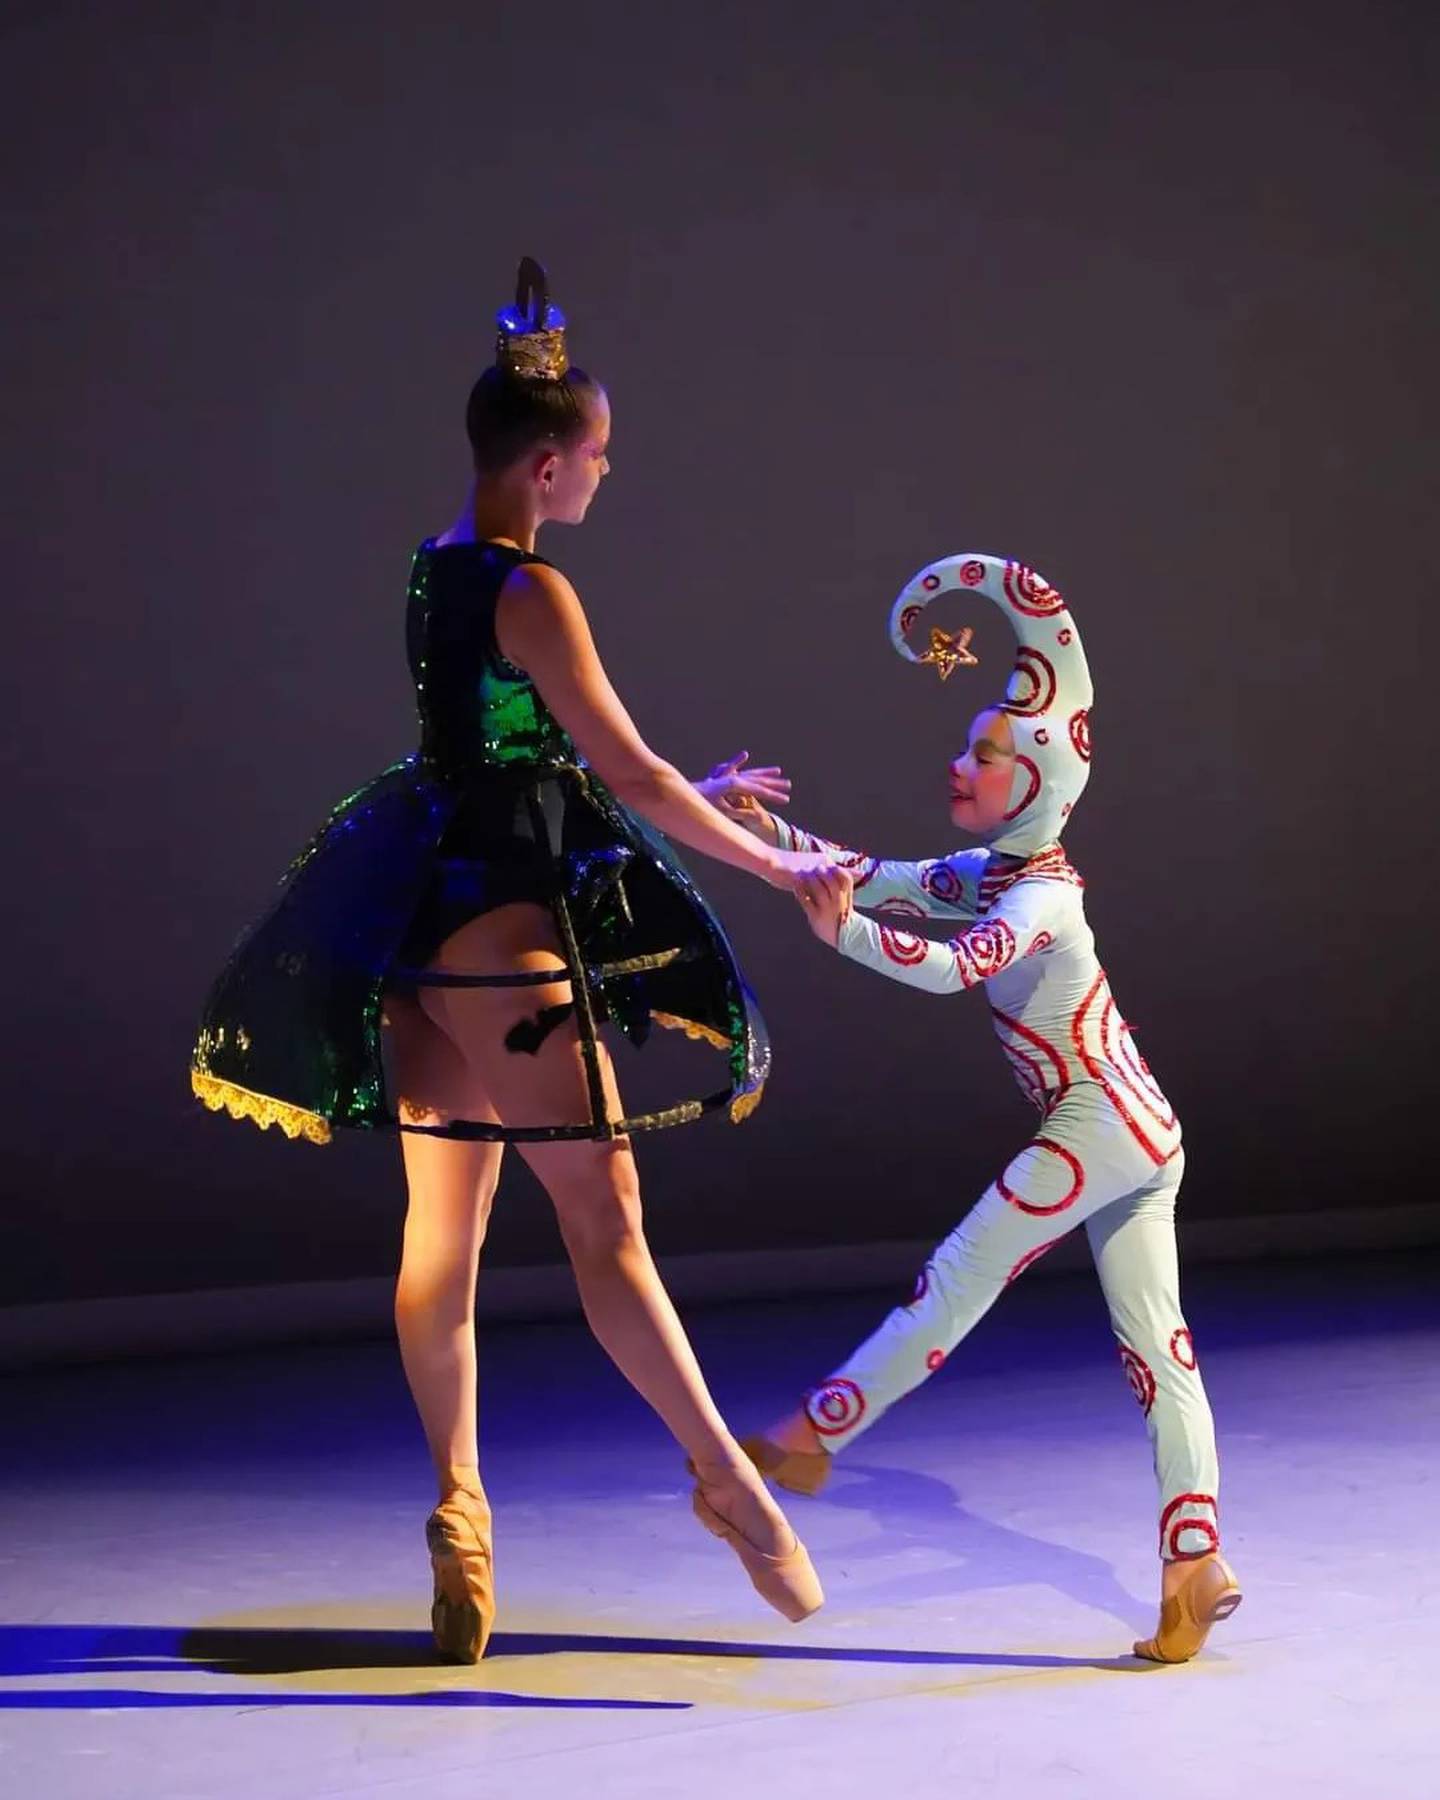 Los personajes principales del ballet son Nicolacho, un pequeño duende, y Nina, una esfera bailarina.